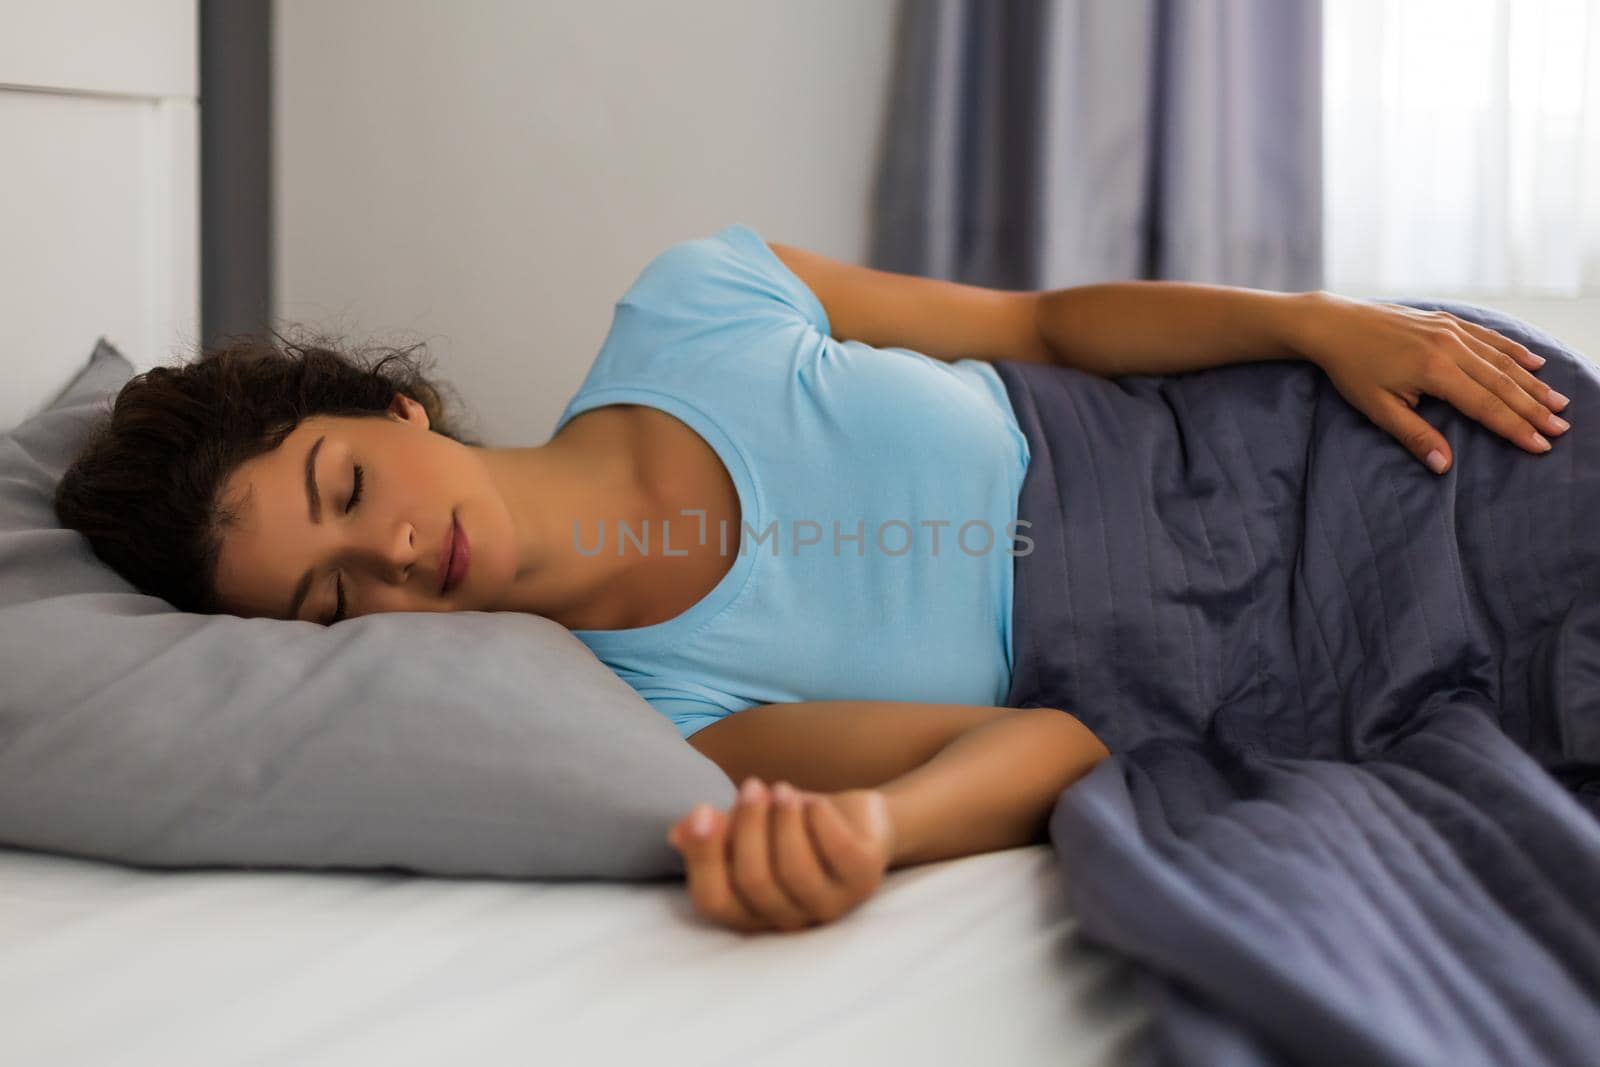 Beautiful woman in pajamas enjoys sleeping in bedroom.